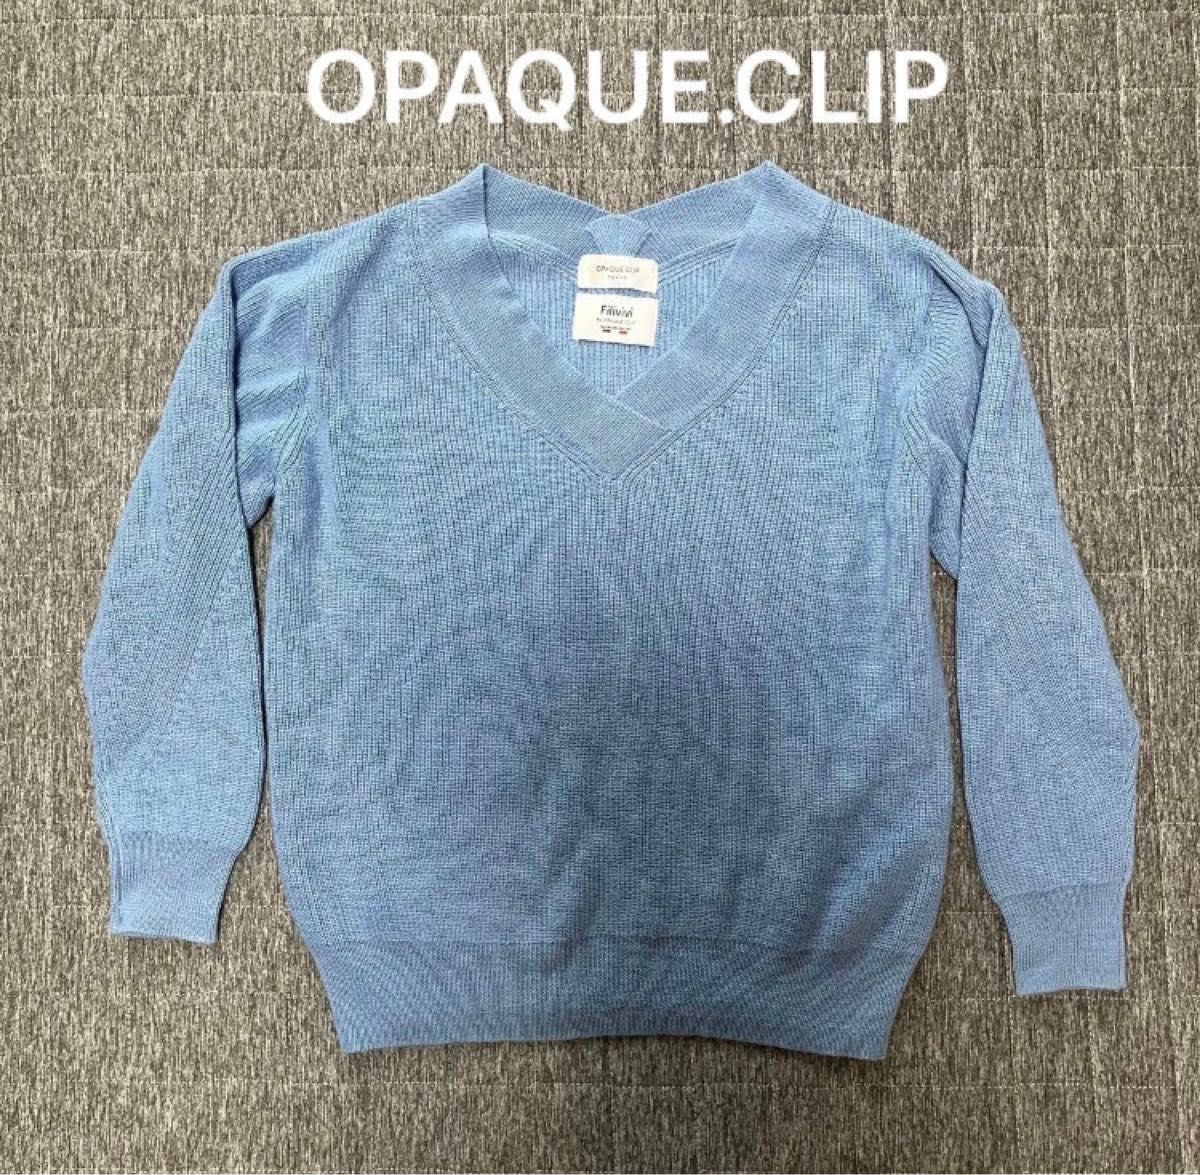 OPAQUE CLIP ブルー ニット レディース 長袖 36 Sサイズ 青 水色